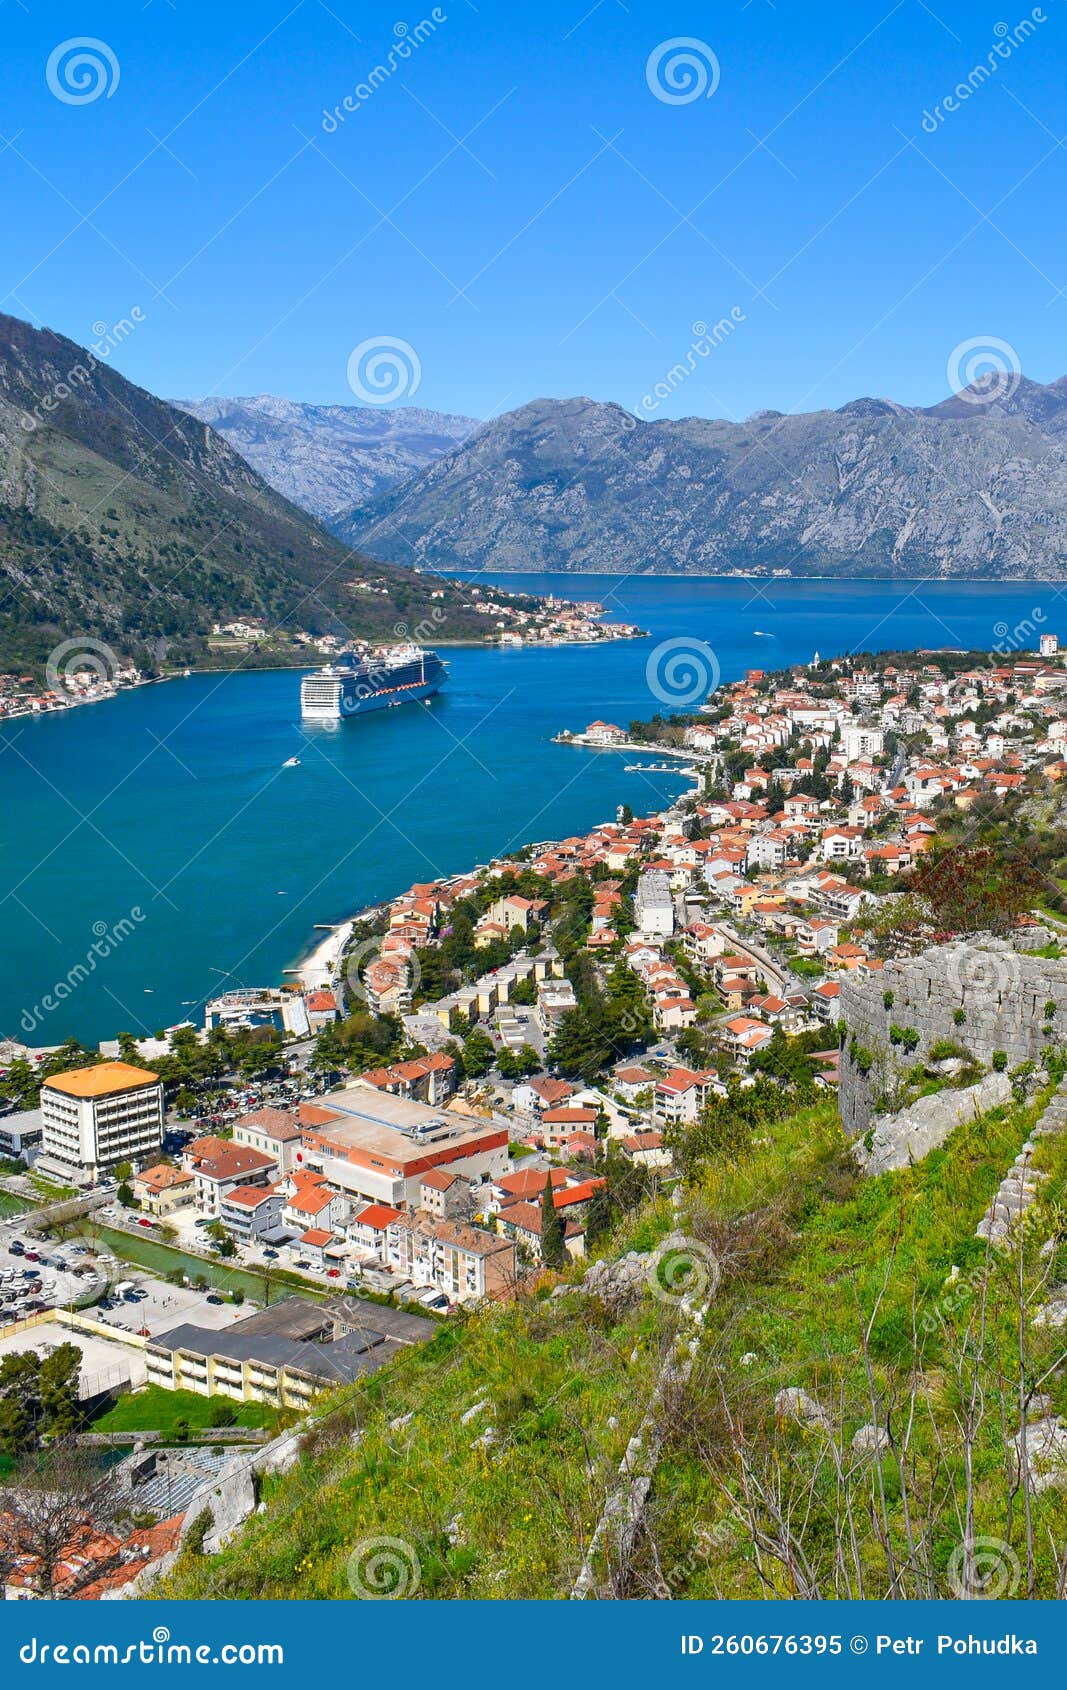 Kotor montenegro europe. baía de kotor no mar adriático. paredes históricas de rochas telhados de prédios da velha cidade. cruzeiro nas montanhas da baía ao fundo. céu azul limpo dia ensolarado.